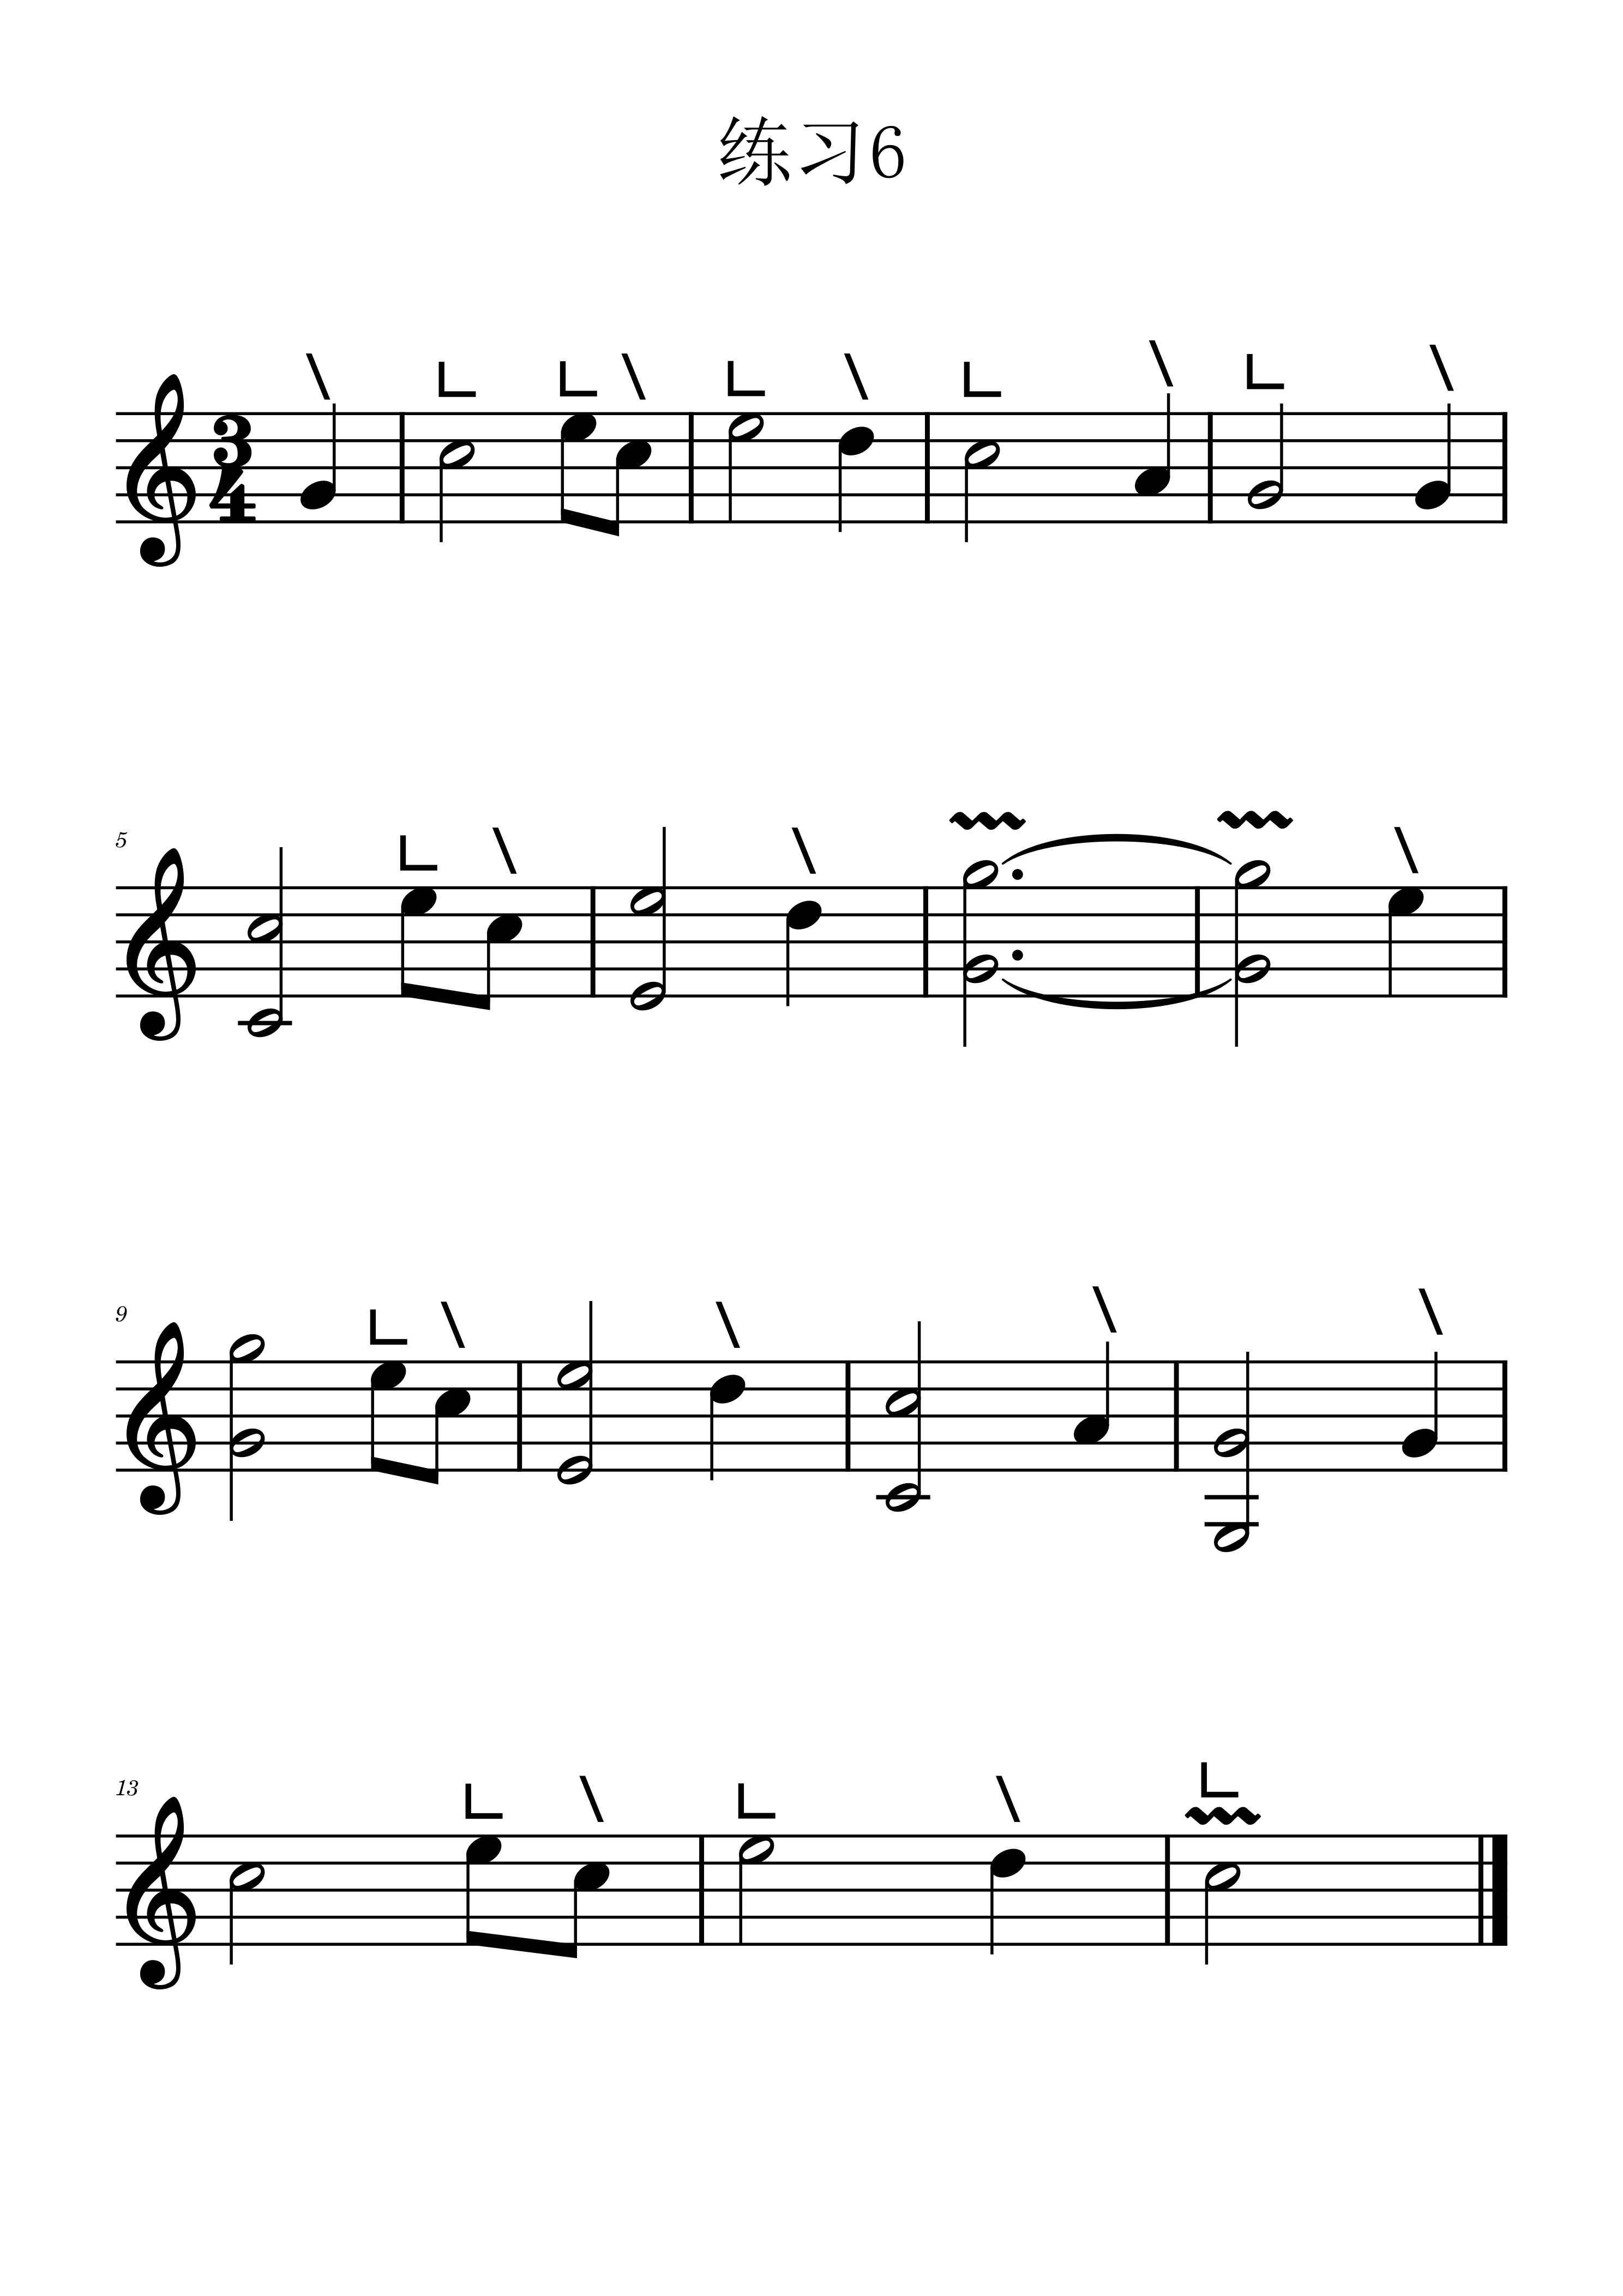 Etude 6 in key C of Guzheng staff（guzheng sheet music）